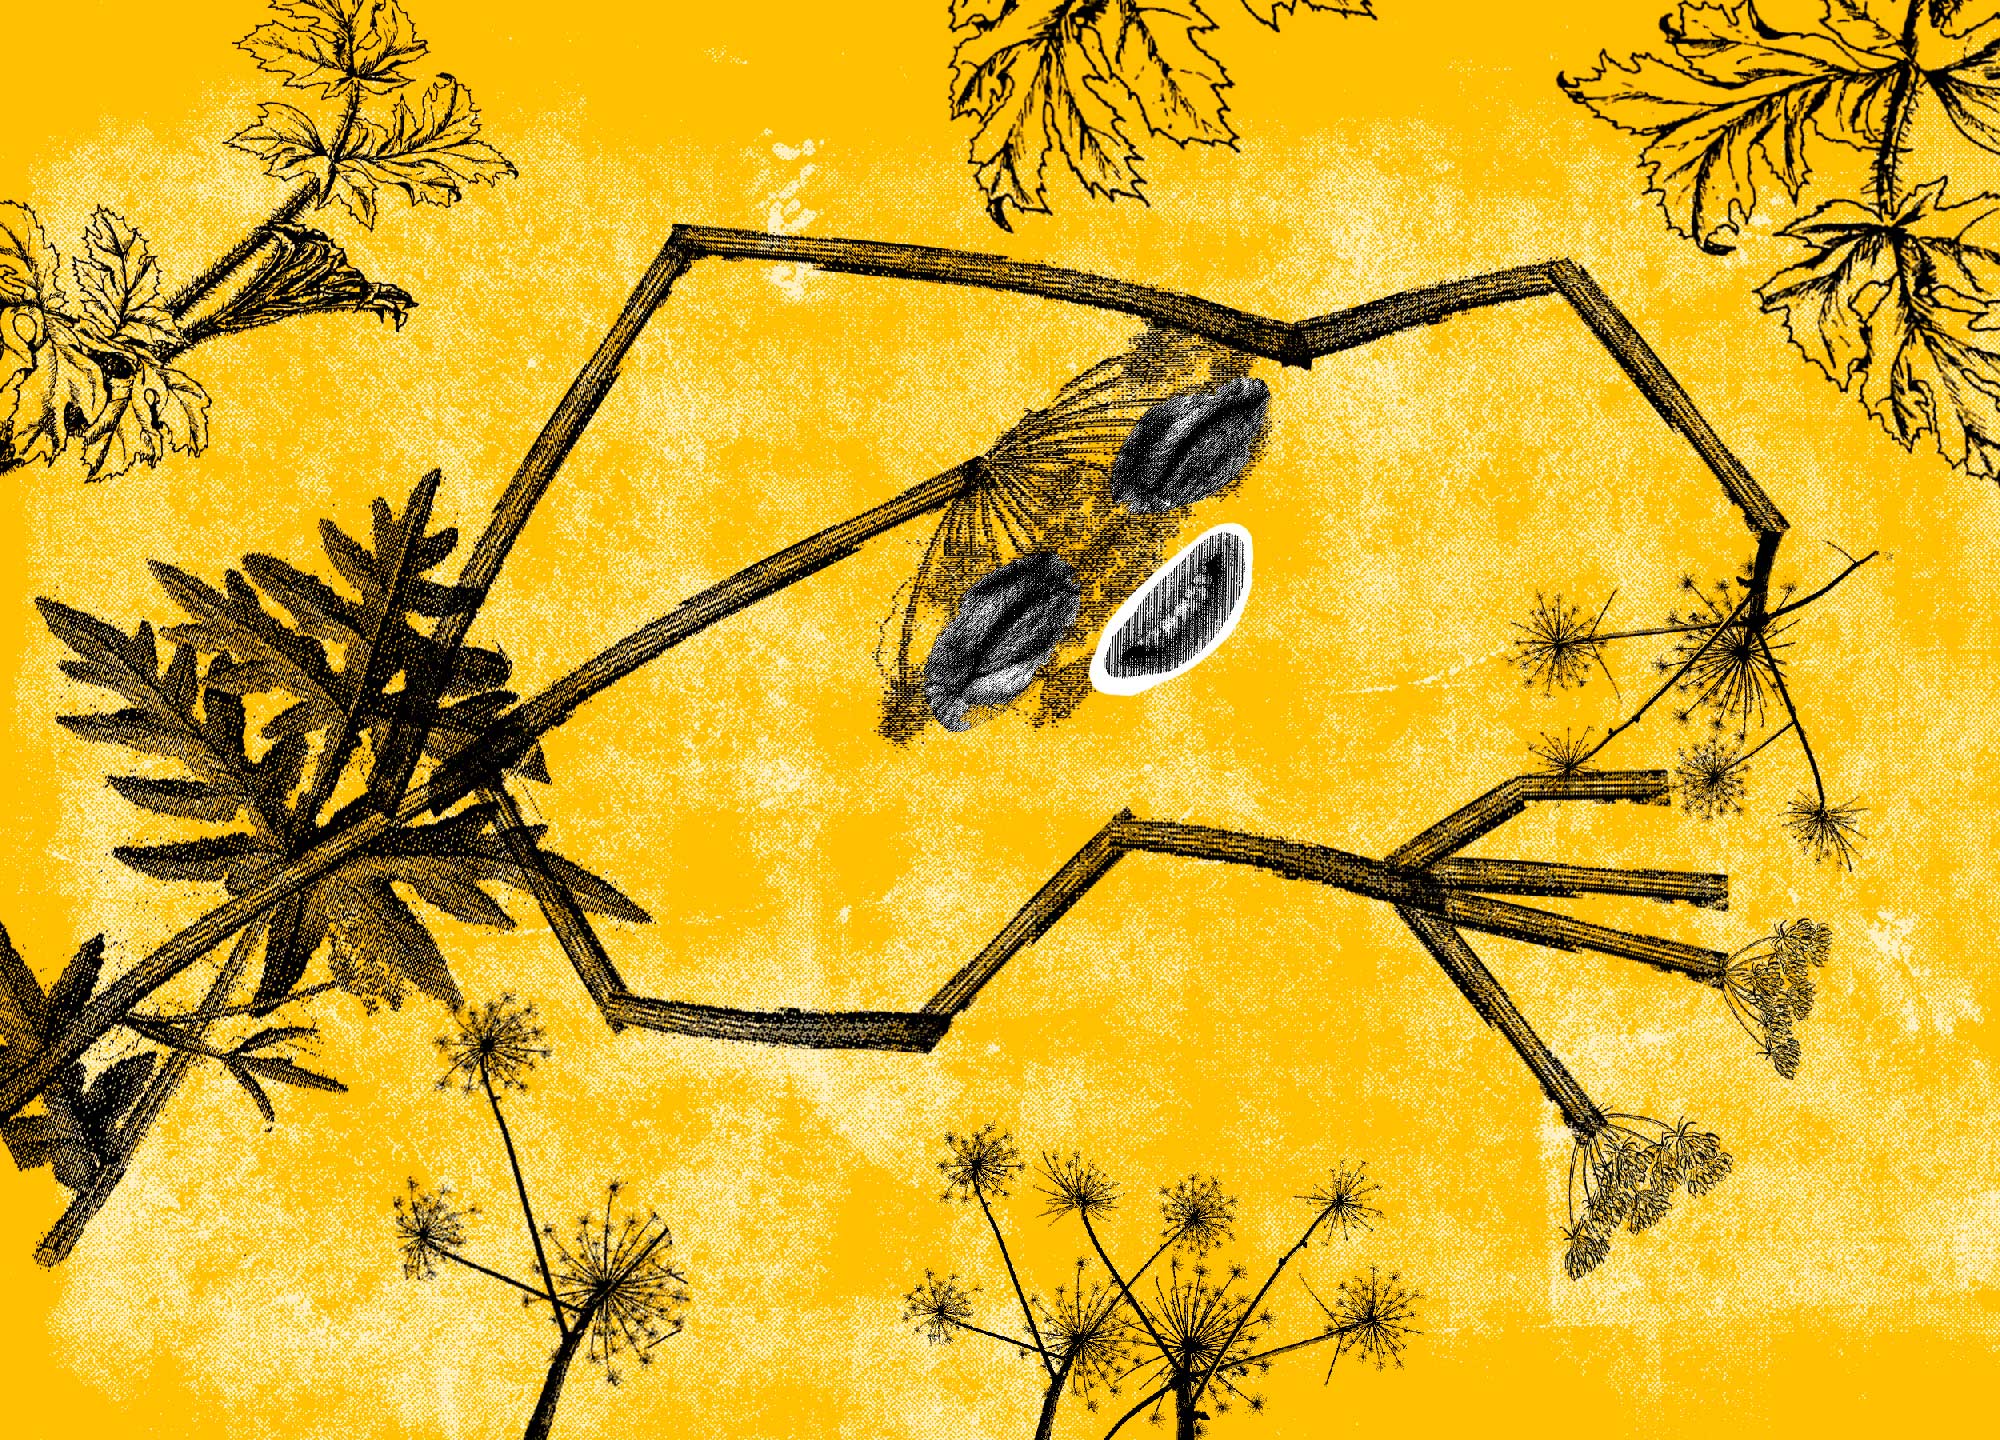 Борщевик- как выглядит, полезные свойства и опасные особенности ядовитого растения